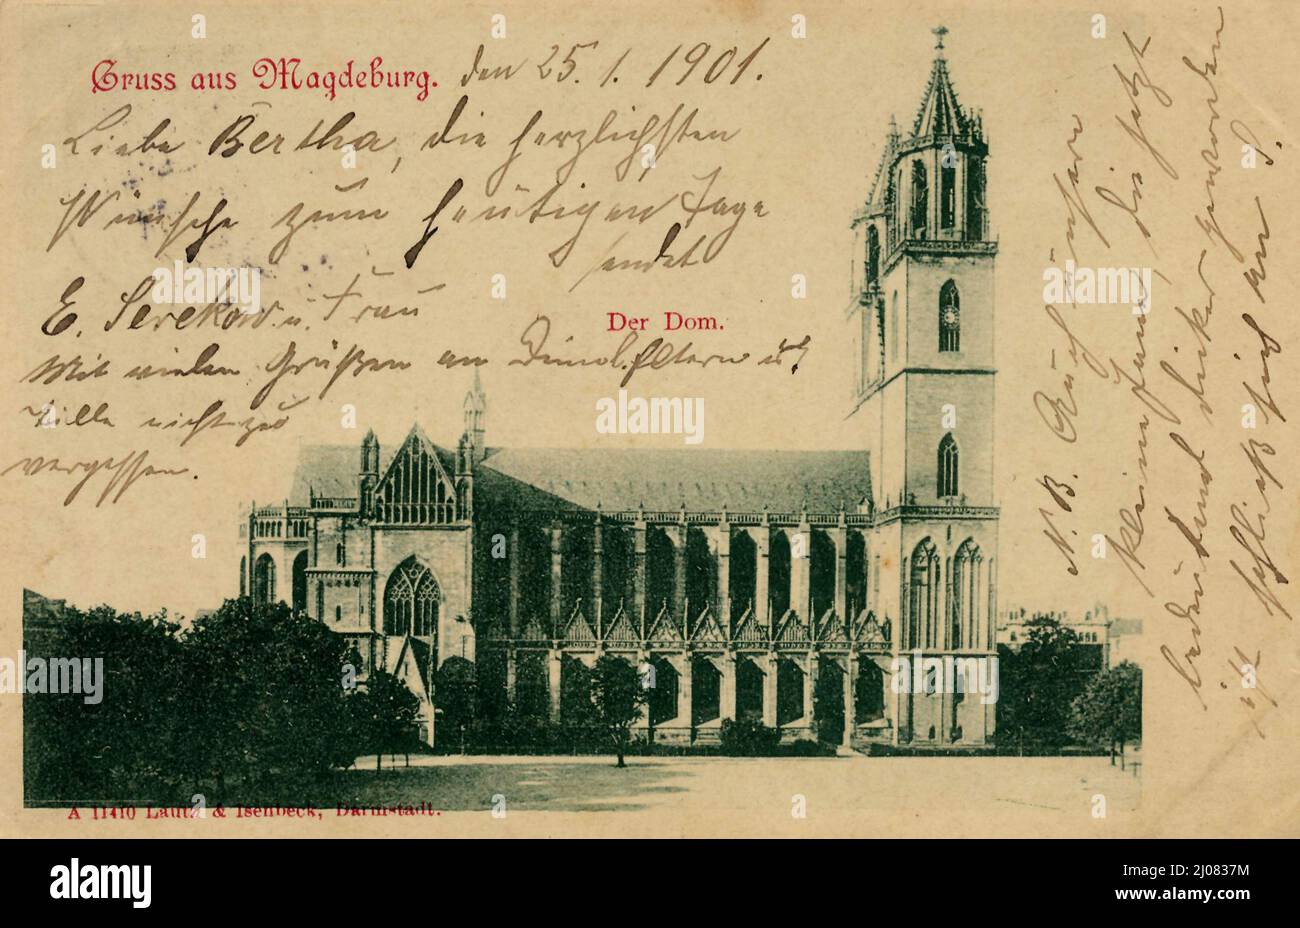 Magdeburg, Sachsen-Anhalt, Deutschland, Ansicht um ca 1910, digitale Reproduktion einer historischen Postkarte, domaine public, aus der damaligen Zeit, genaues Datum unbekannt Banque D'Images